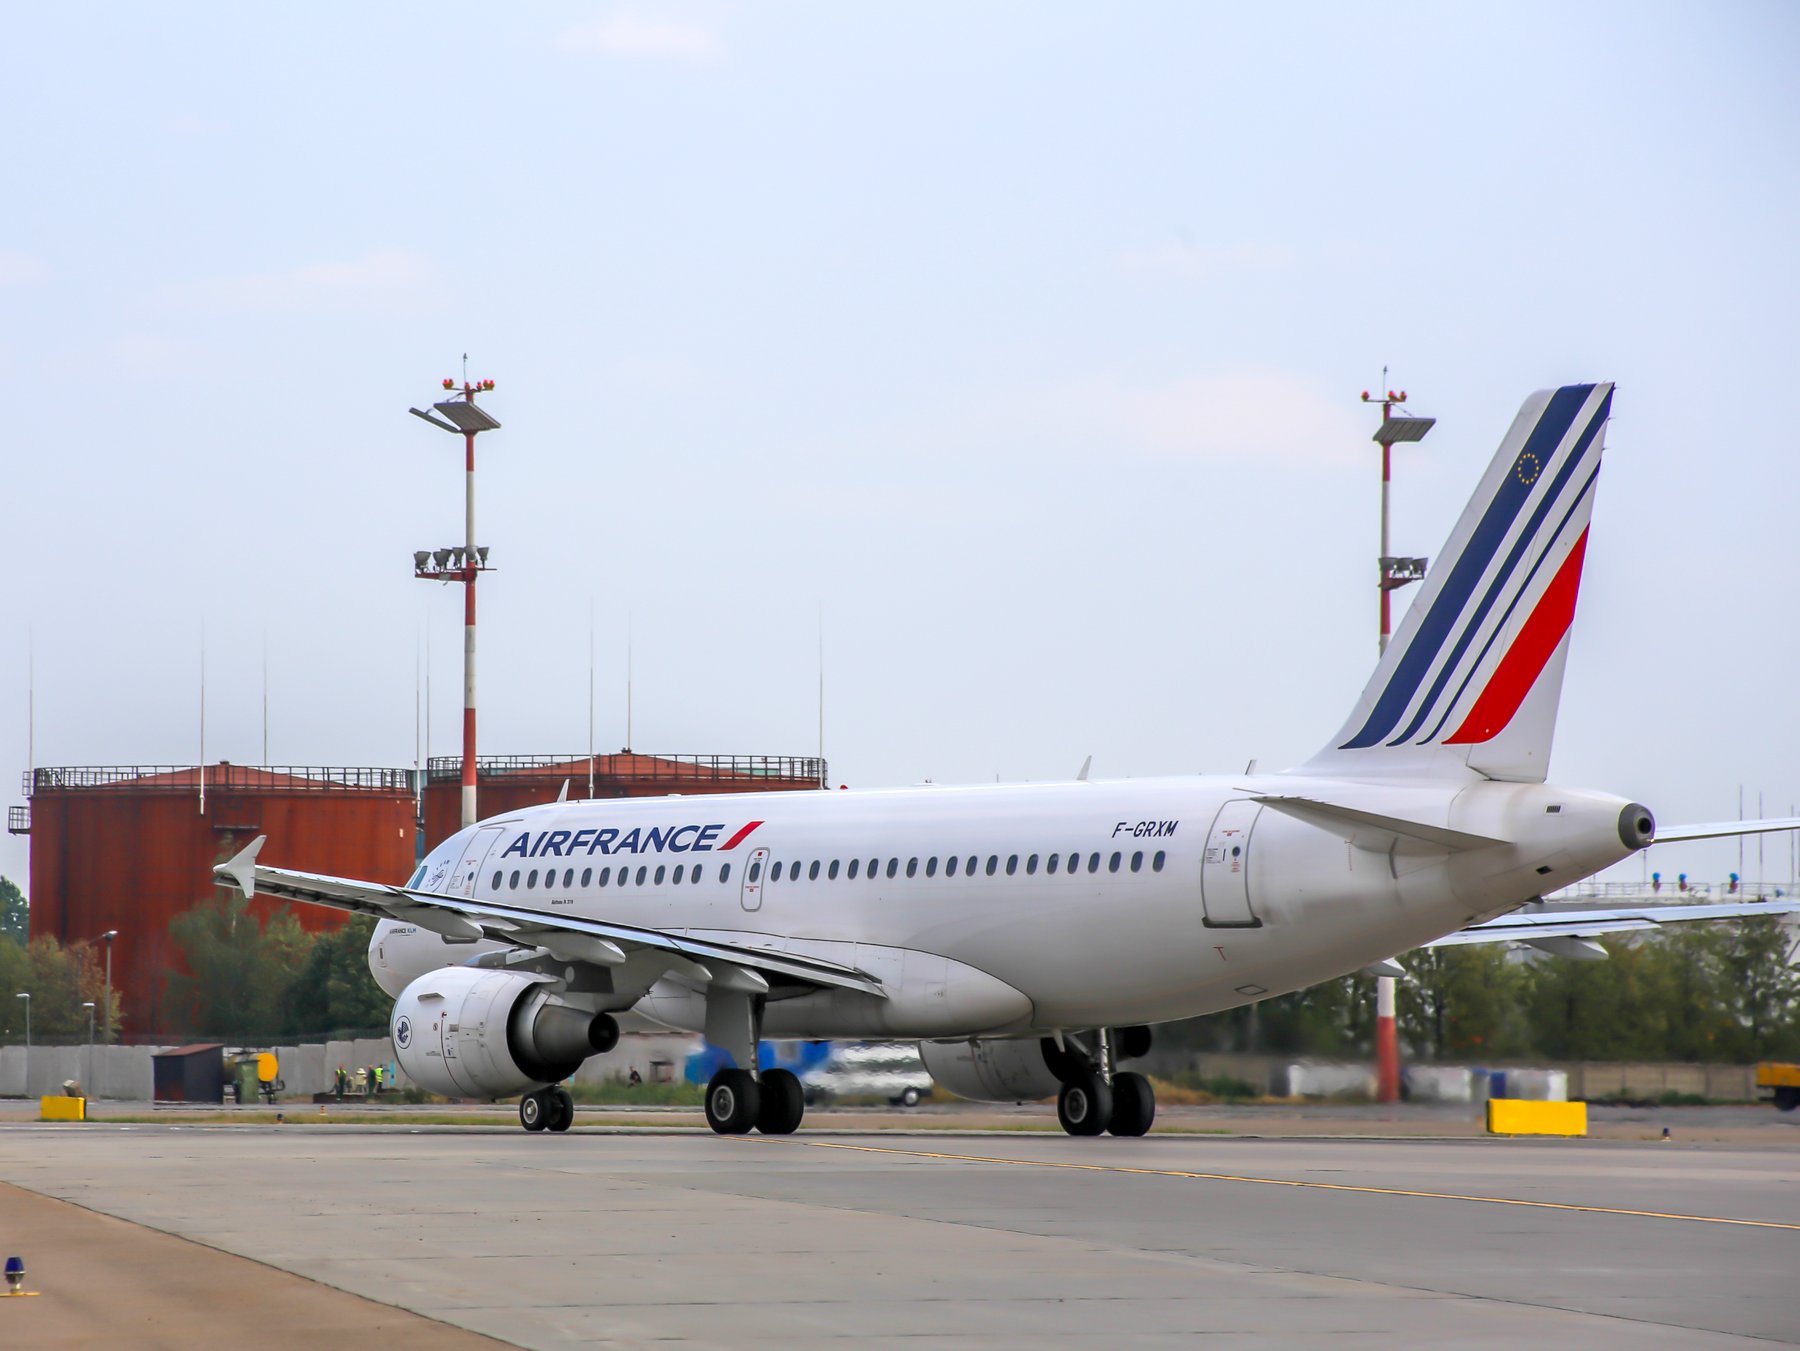 Полиция Парижа задержала пассажирку самолета, которая везла ребенка в ручной клади